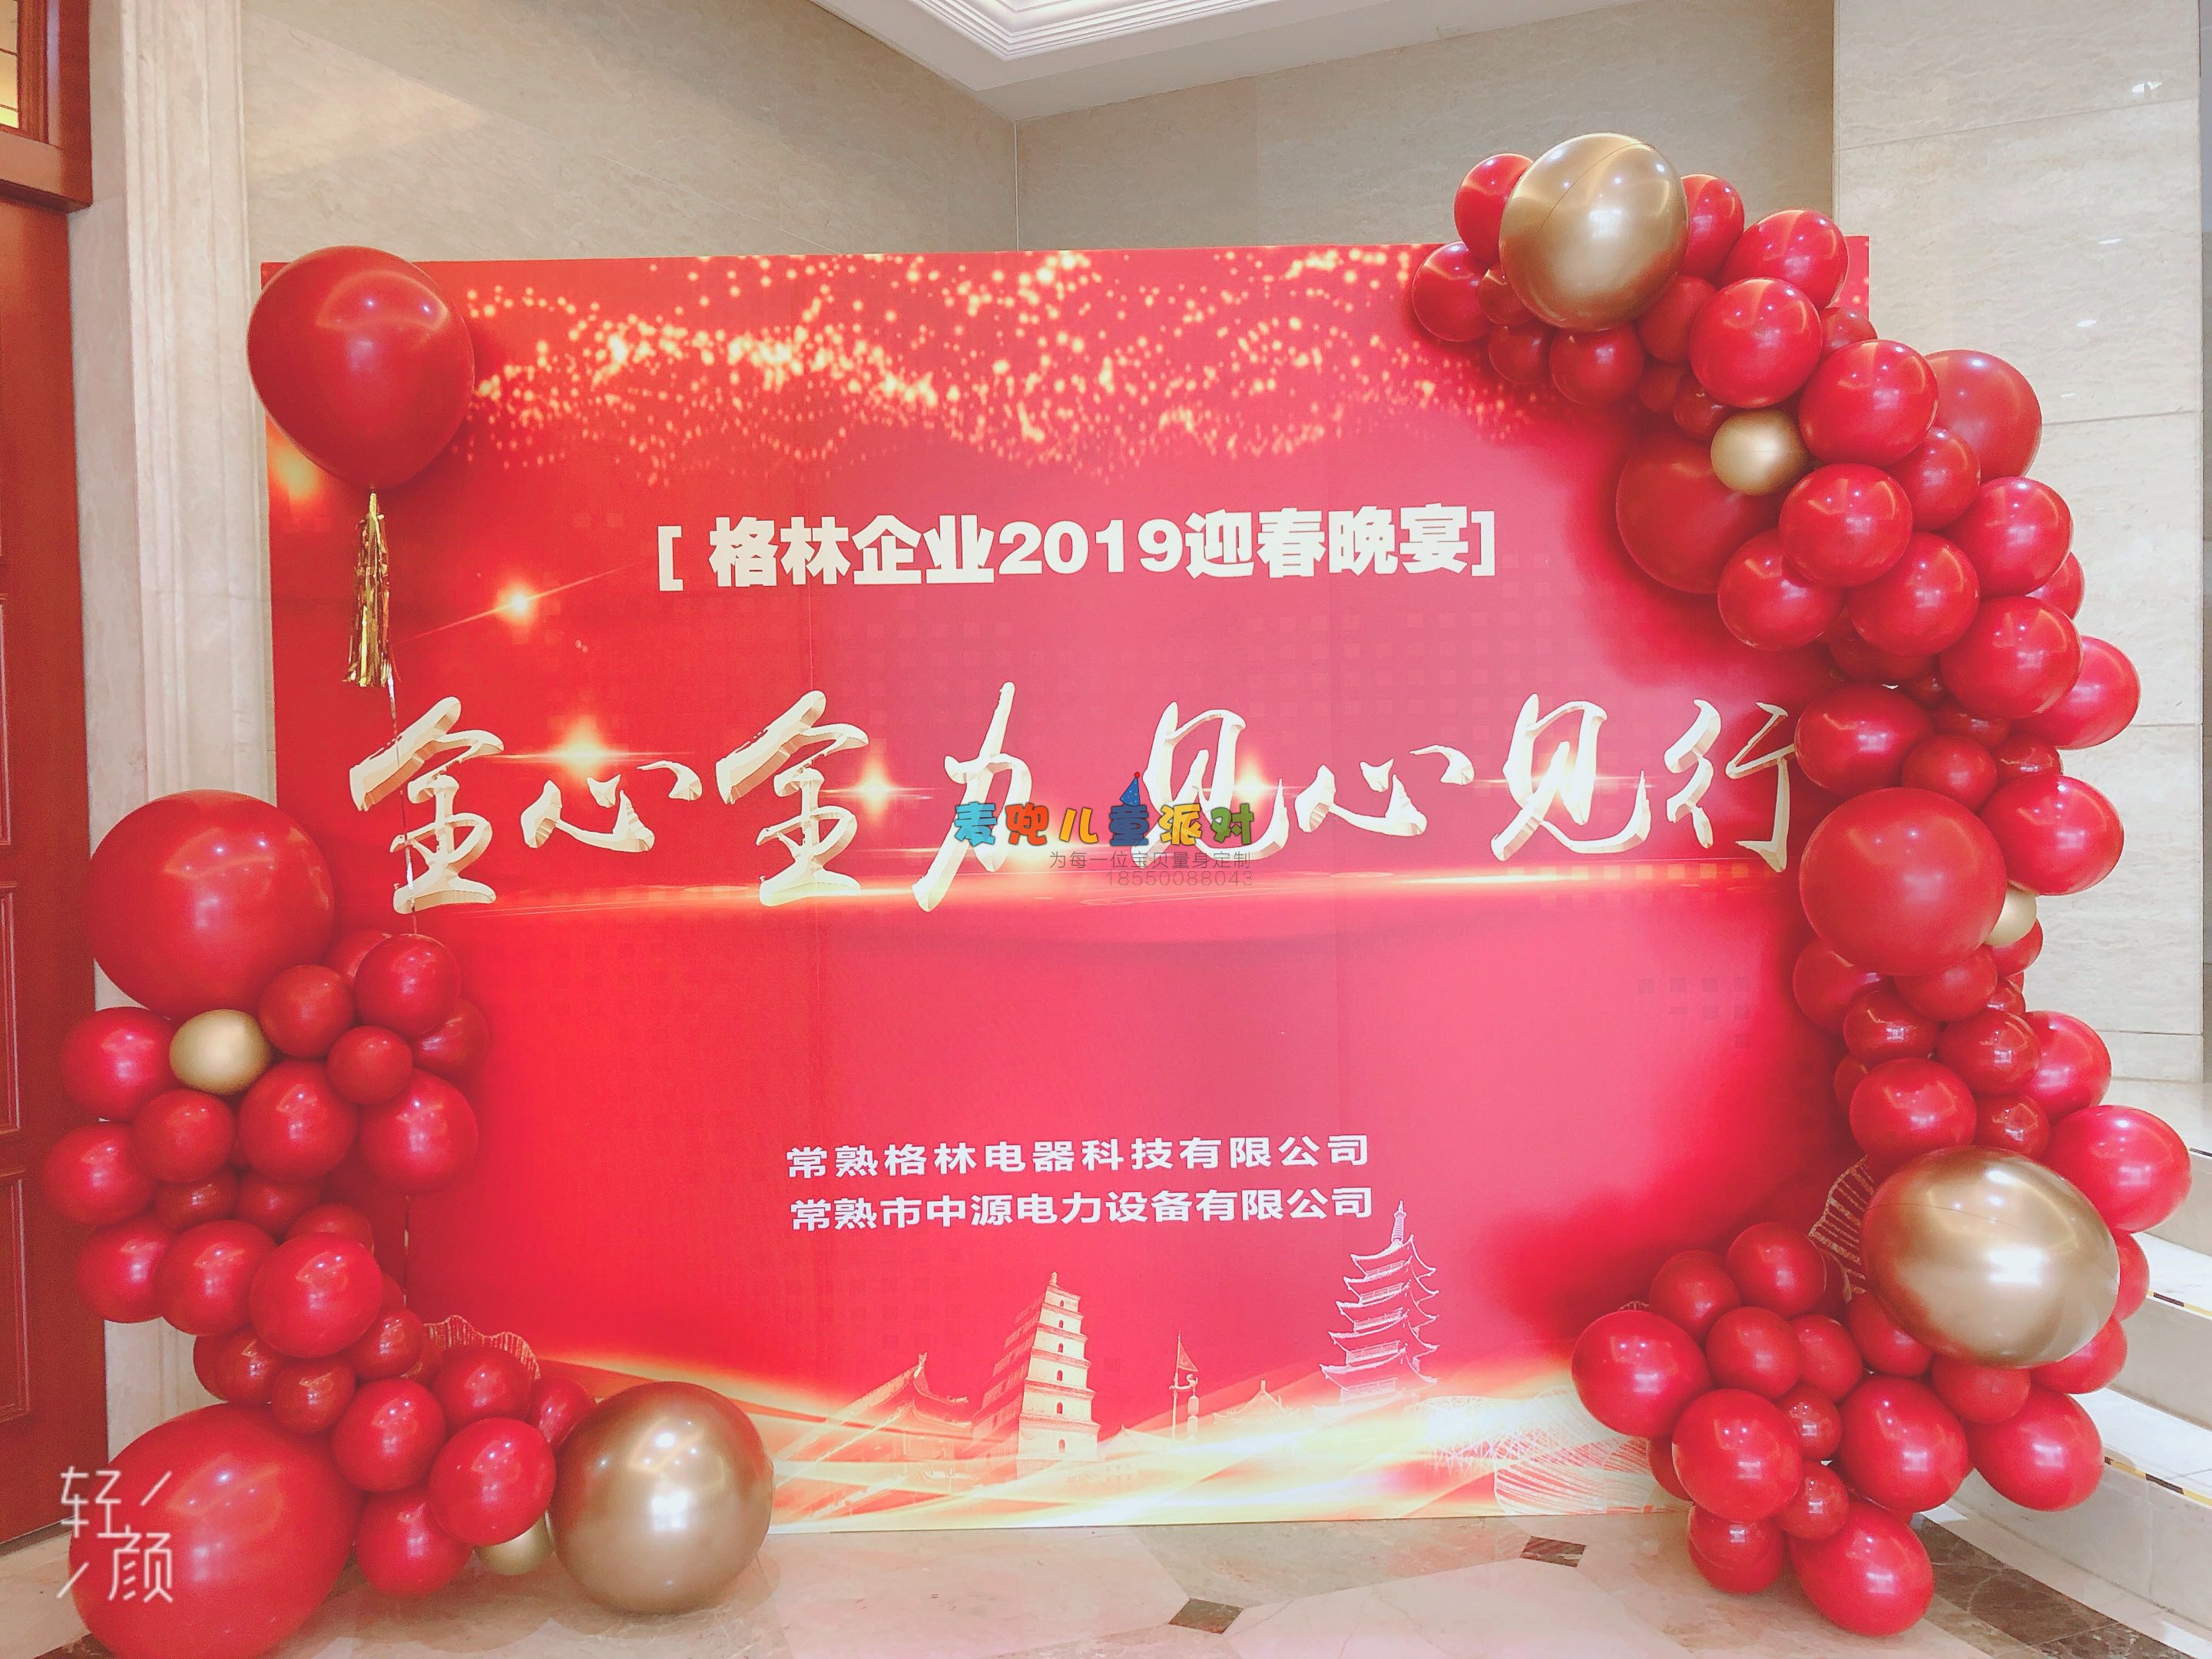 苏州上海无锡年会布置尾牙活动策划方案 签到背景墙气球装饰现场